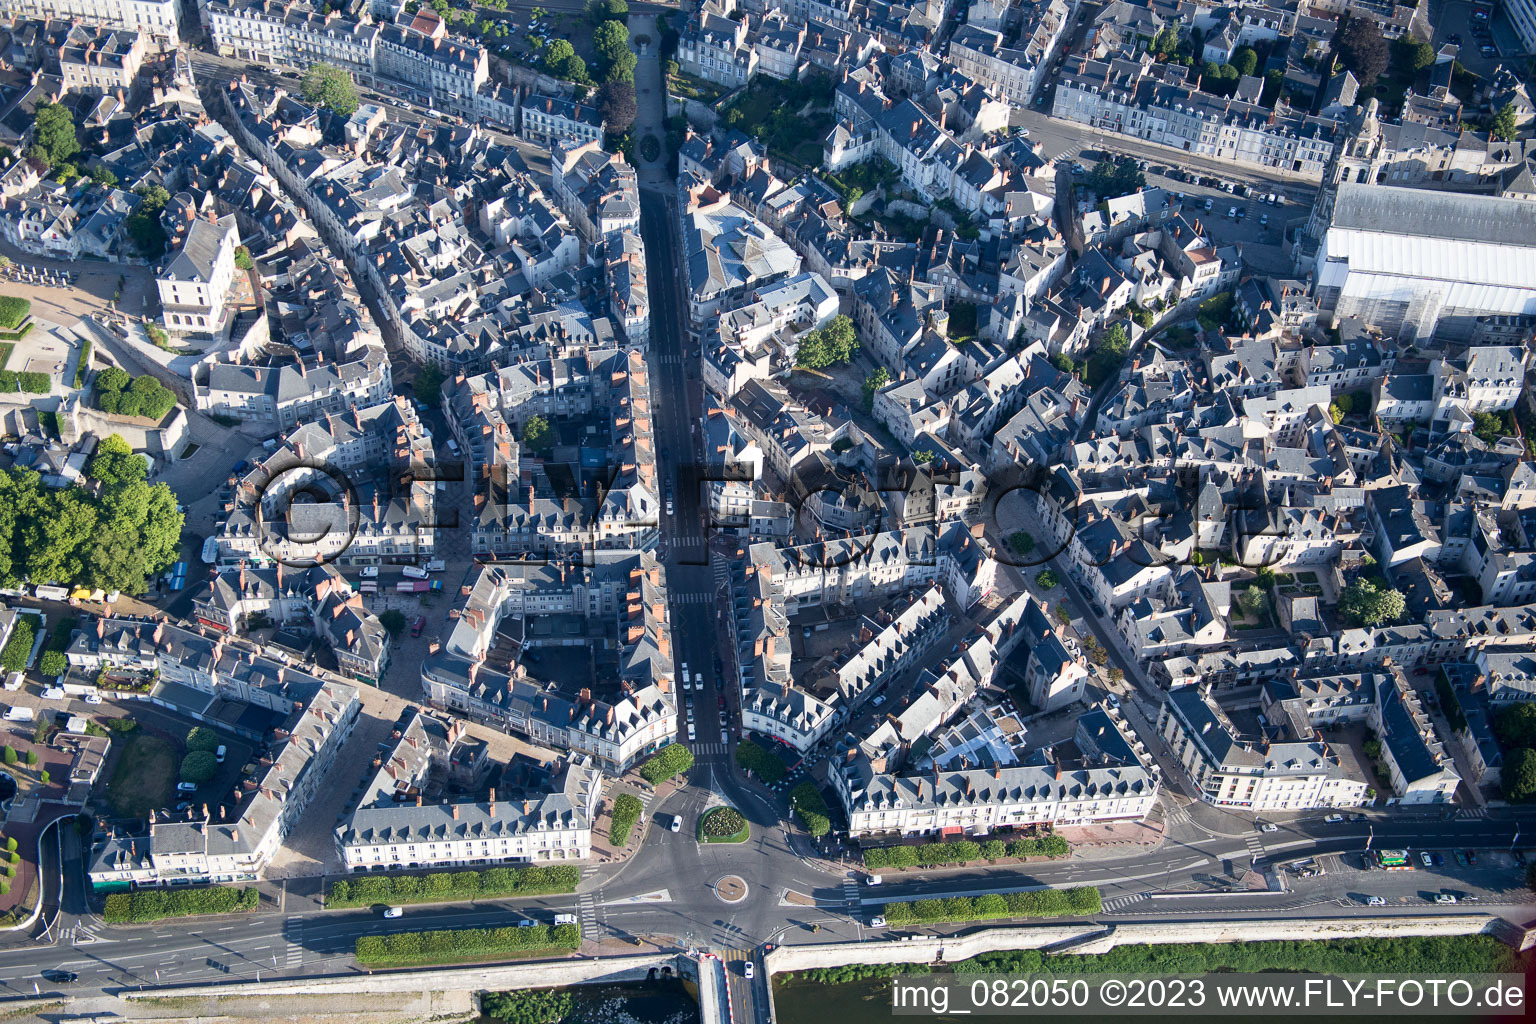 Blois dans le département Loir et Cher, France d'en haut